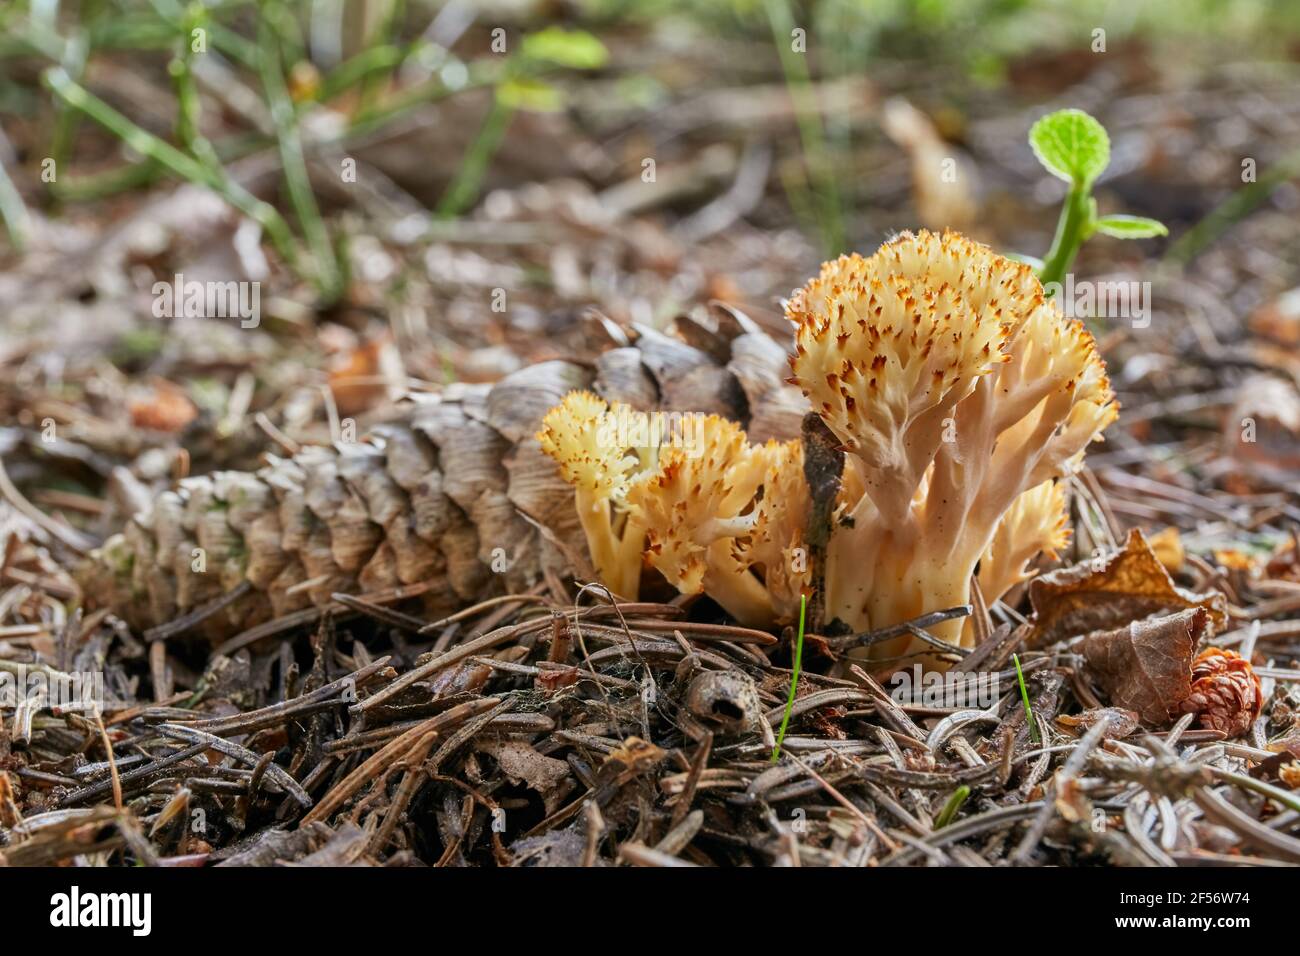 Clavulina coralloides - fungo commestibile. Fungo nell'ambiente naturale. Inglese: Fungo corallino bianco, fungo corallino crestato Foto Stock